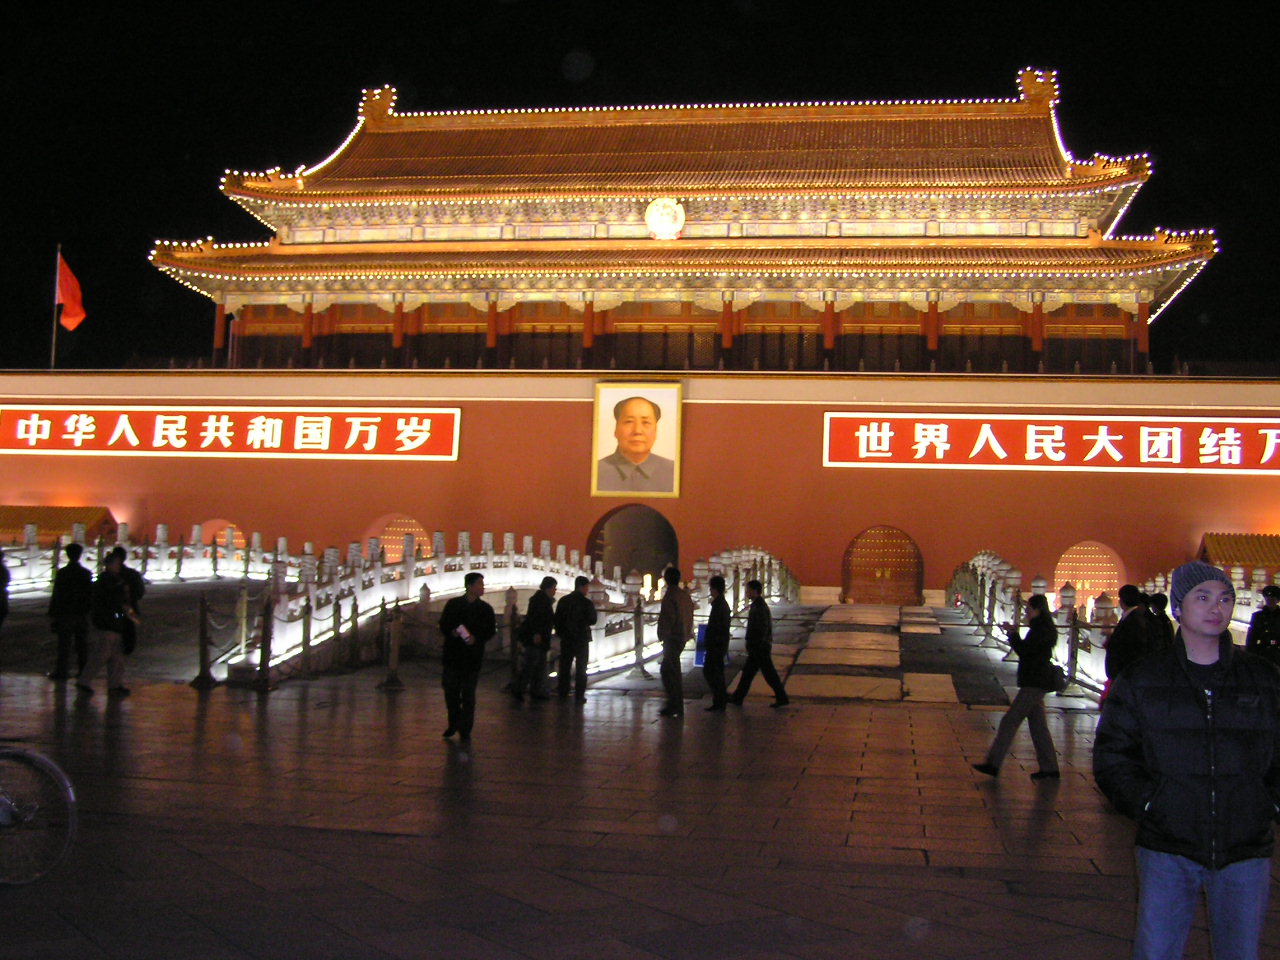 мавзолей в китае